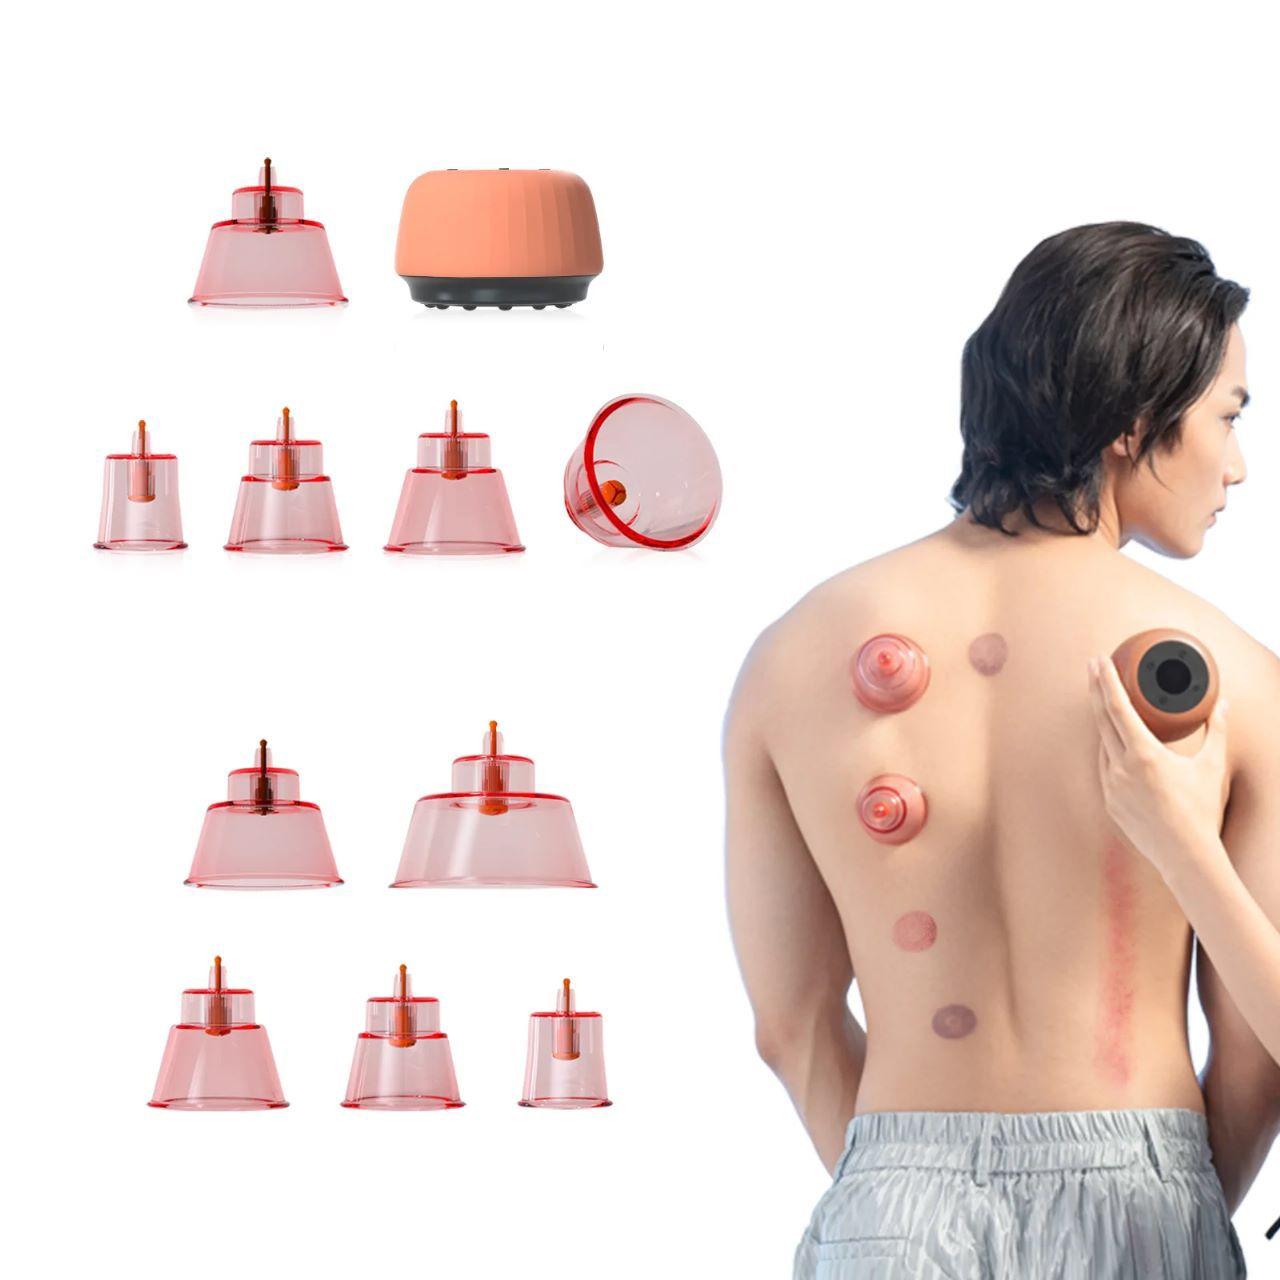 جهاز الحجامة الذكي والتدليك الكهربائي (الجواشا) Zdeer Cupping Therapy Massager and Heating Cupping Set